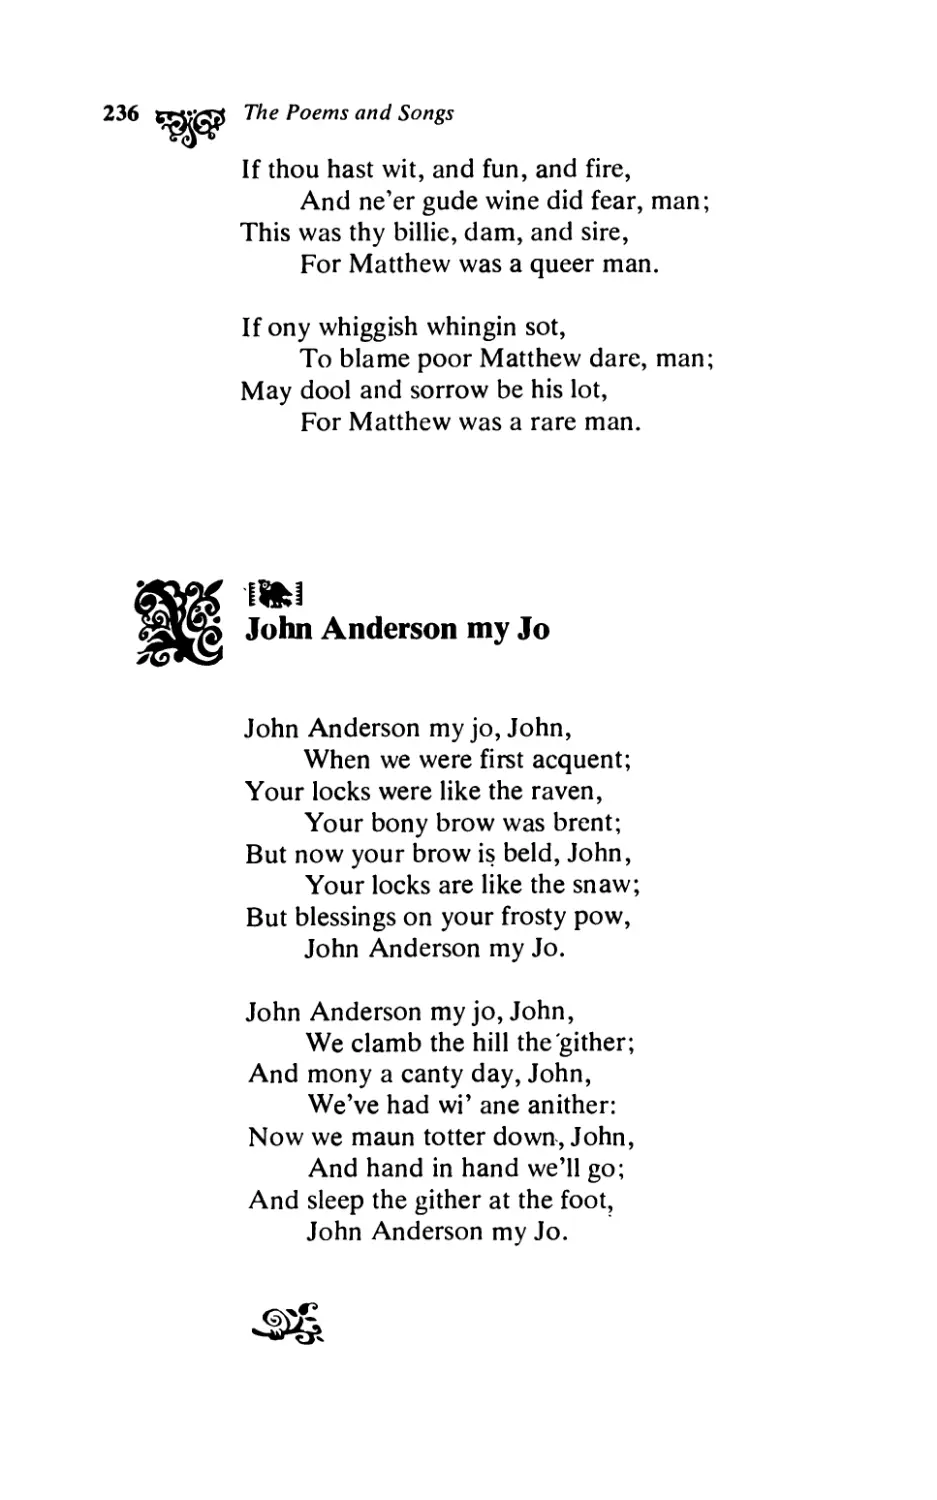 John Anderson my Jo